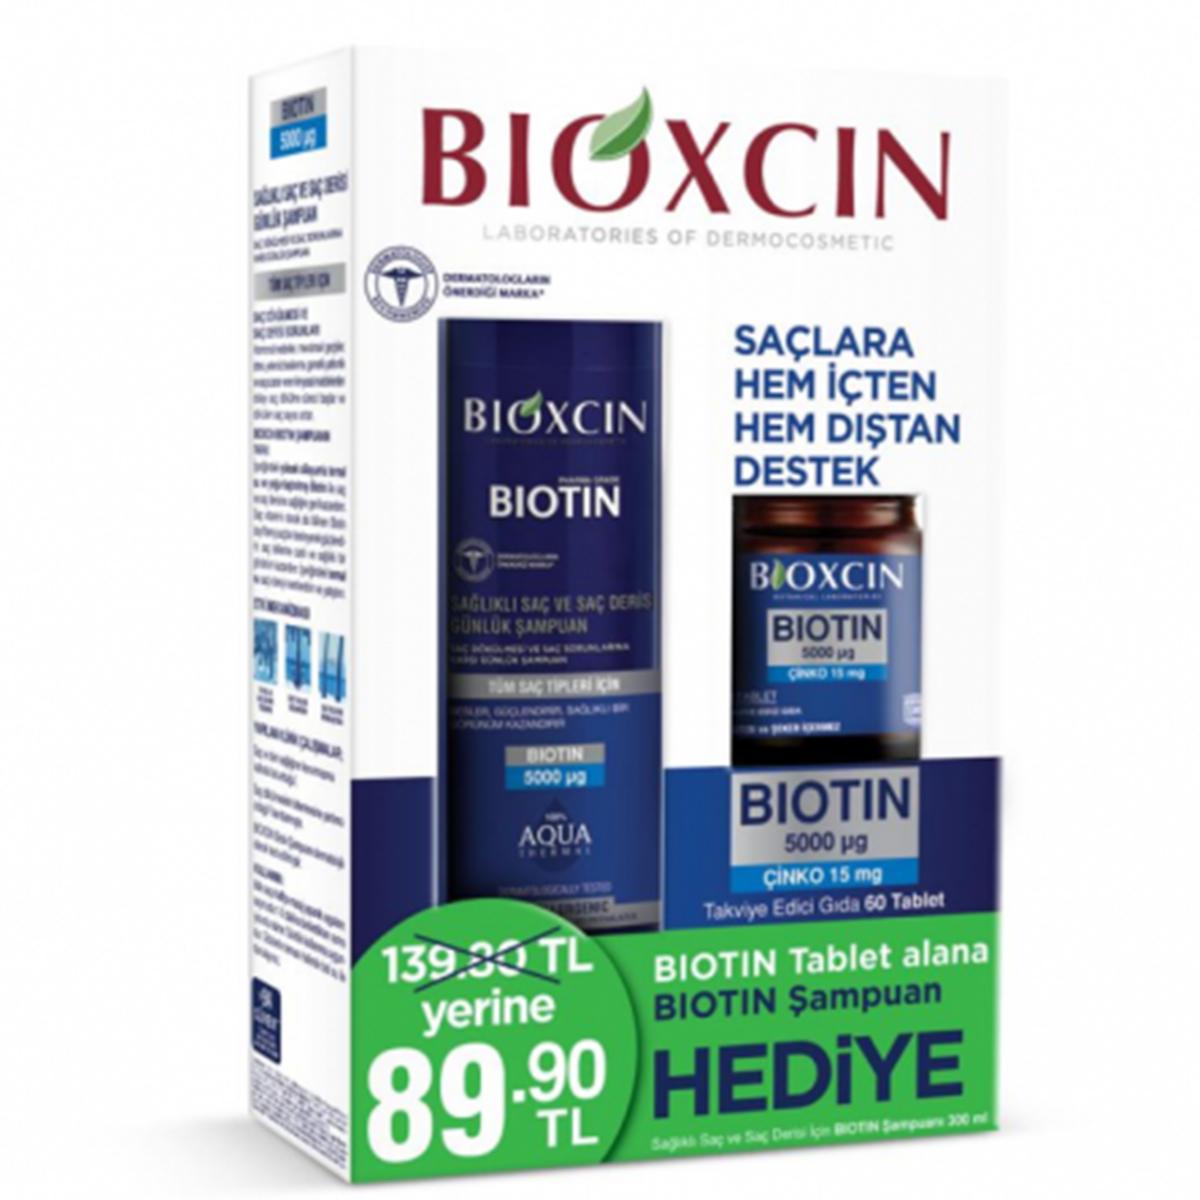 Bıoxcın Biotin Sade Kadın Vitamin 60 Tablet